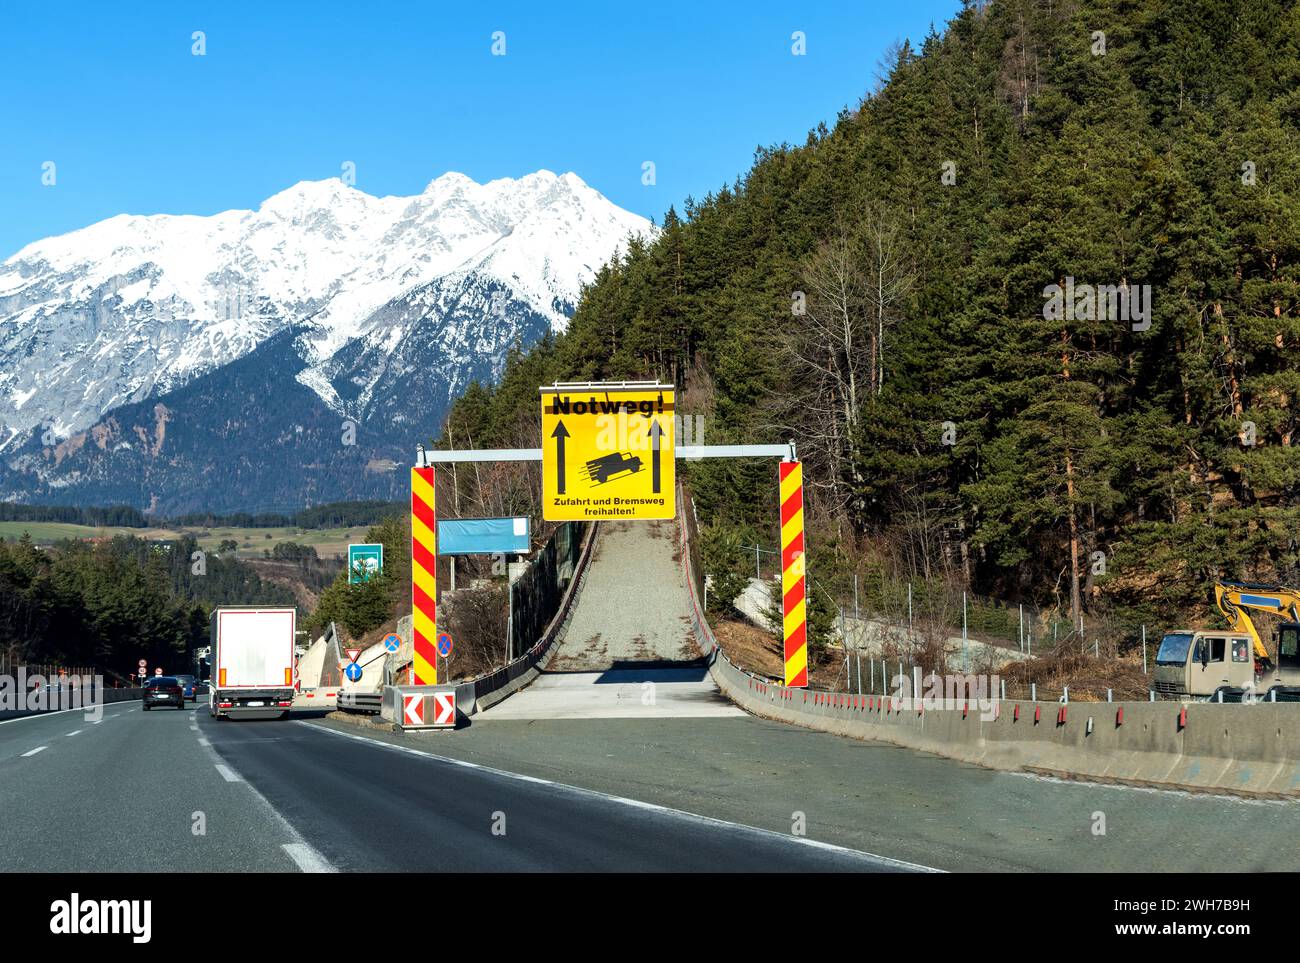 Straßenschild für Notweg – Notweg-Lkw-Rampe im Wald auf einer Bergstraße, die ein Fahrzeug verlangsamen und Unfälle verhindern soll, wenn es sich um einen gewerblichen Einsatz handelt Stockfoto